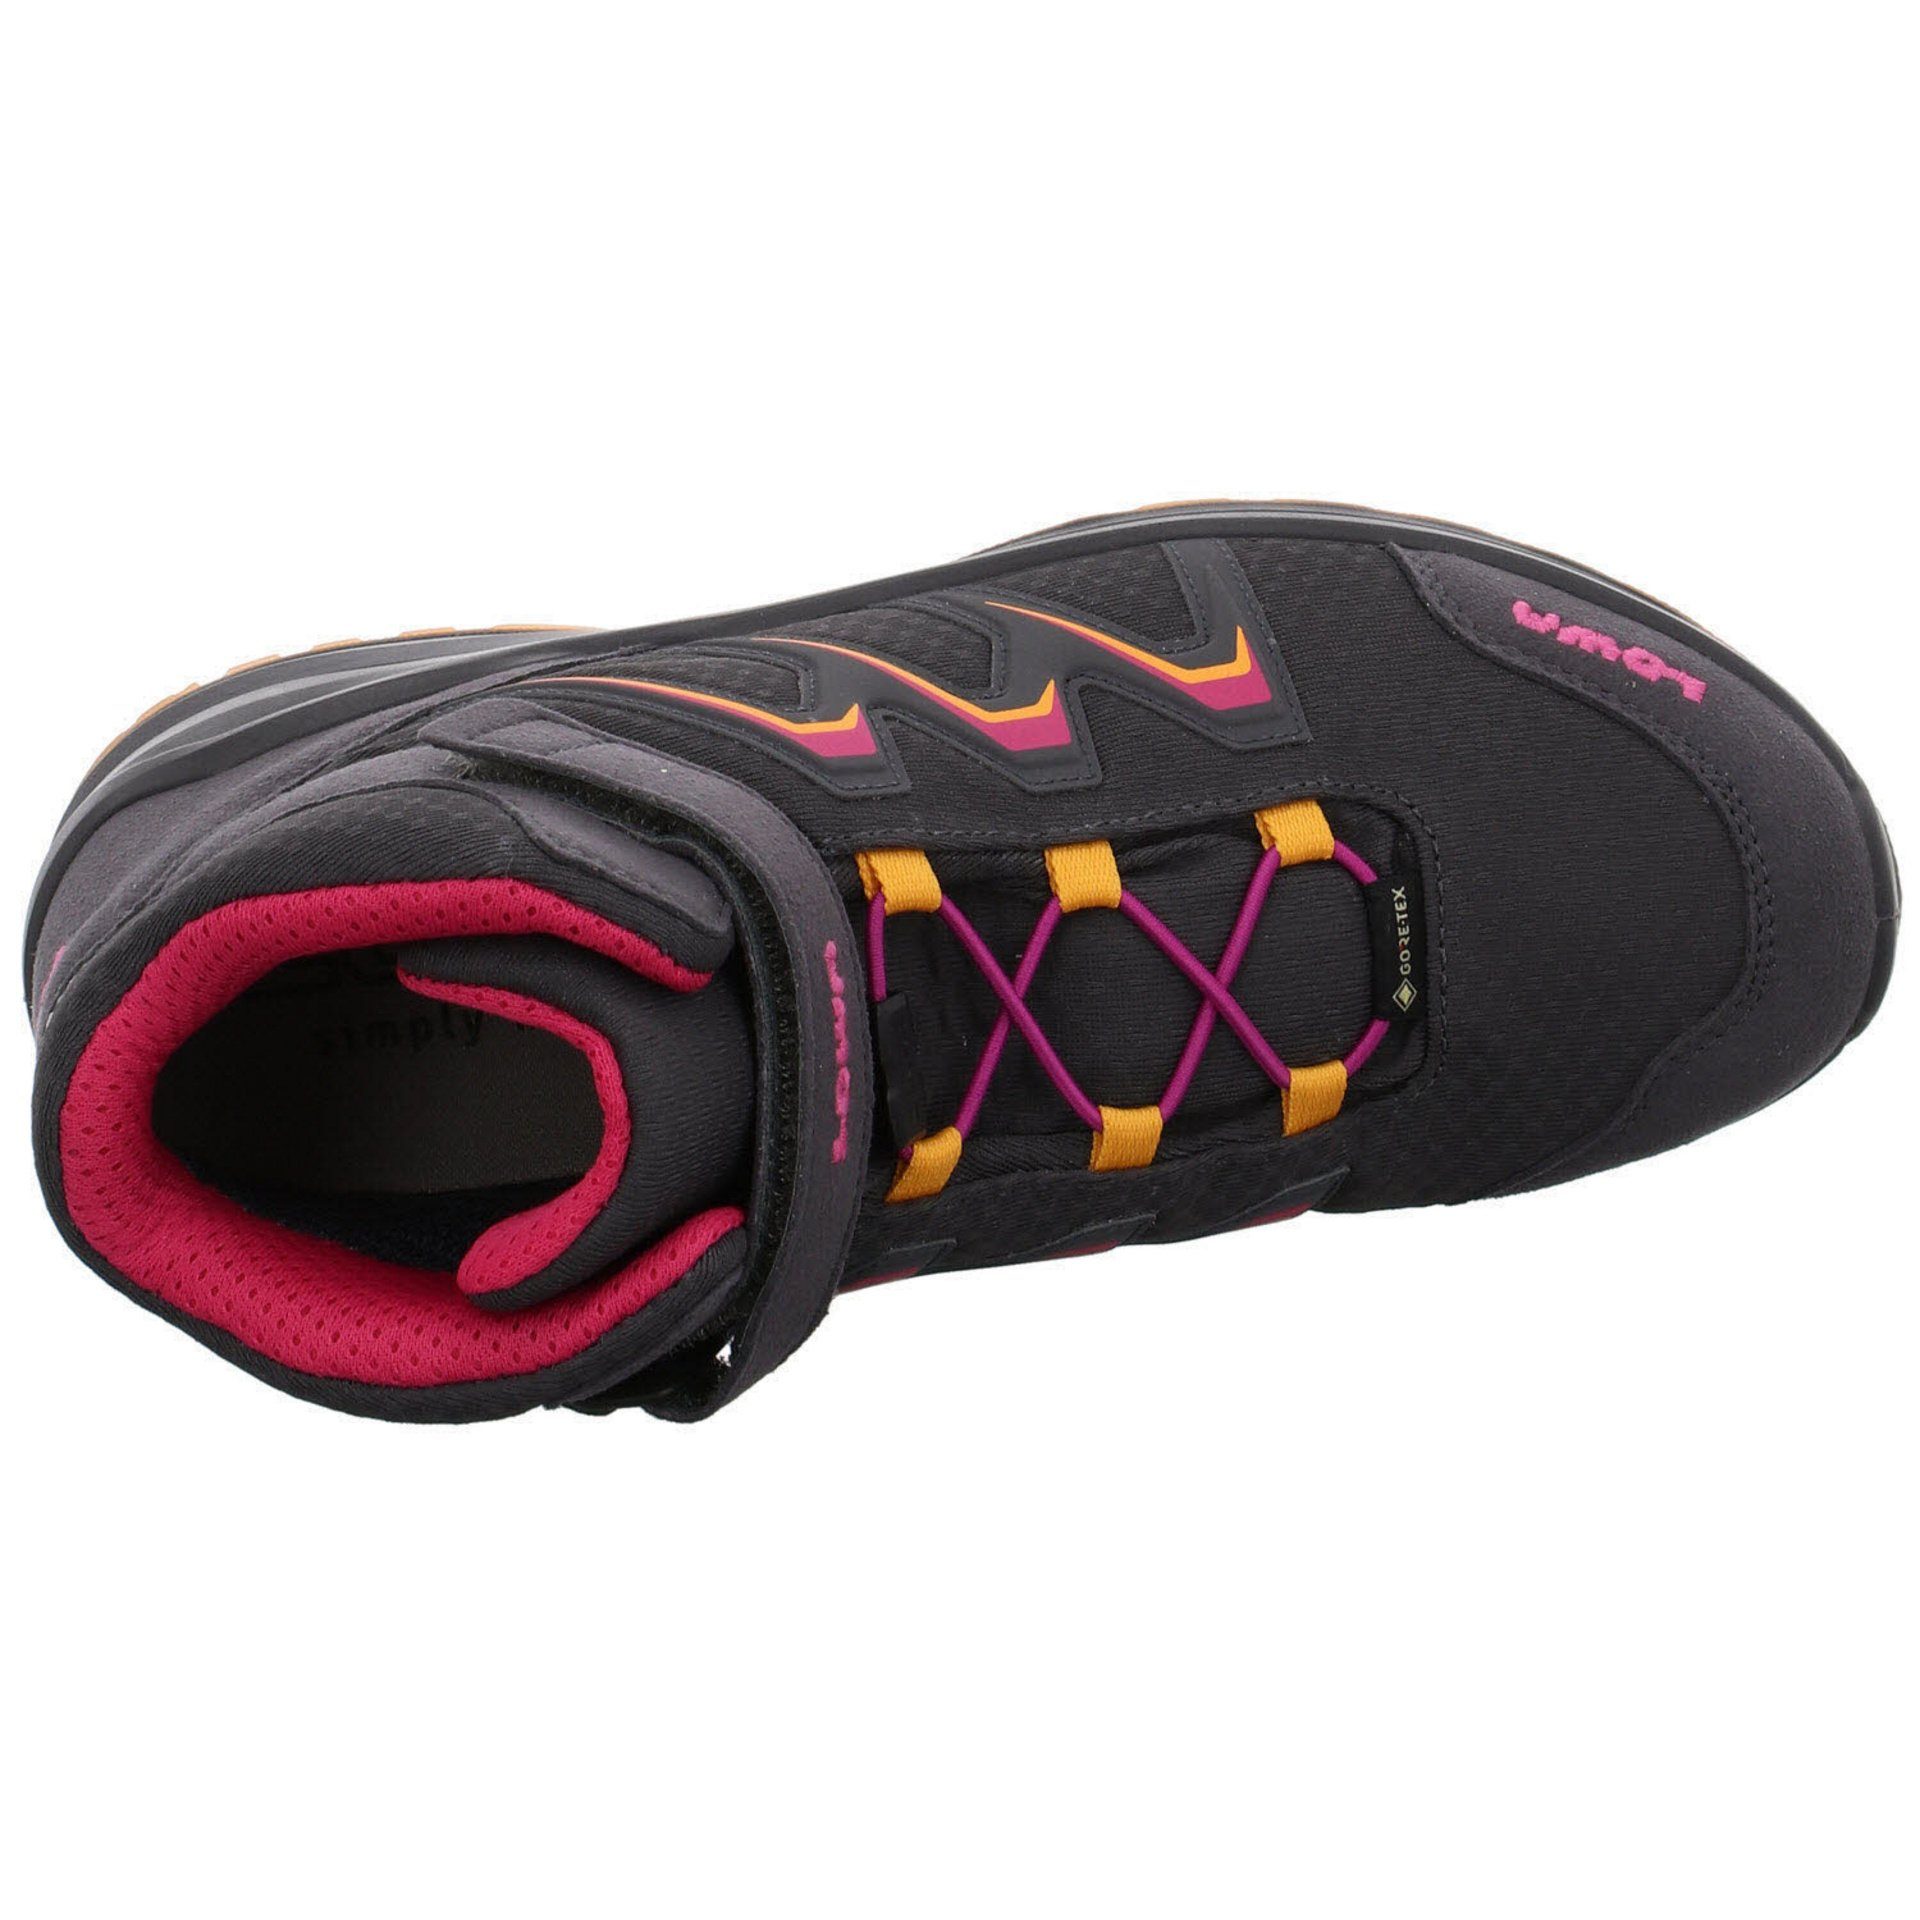 Boots GTX Schuhe Jungen Lowa GRAPHIT/MANDARINE Maddox Stiefel Textil Warm Stiefel